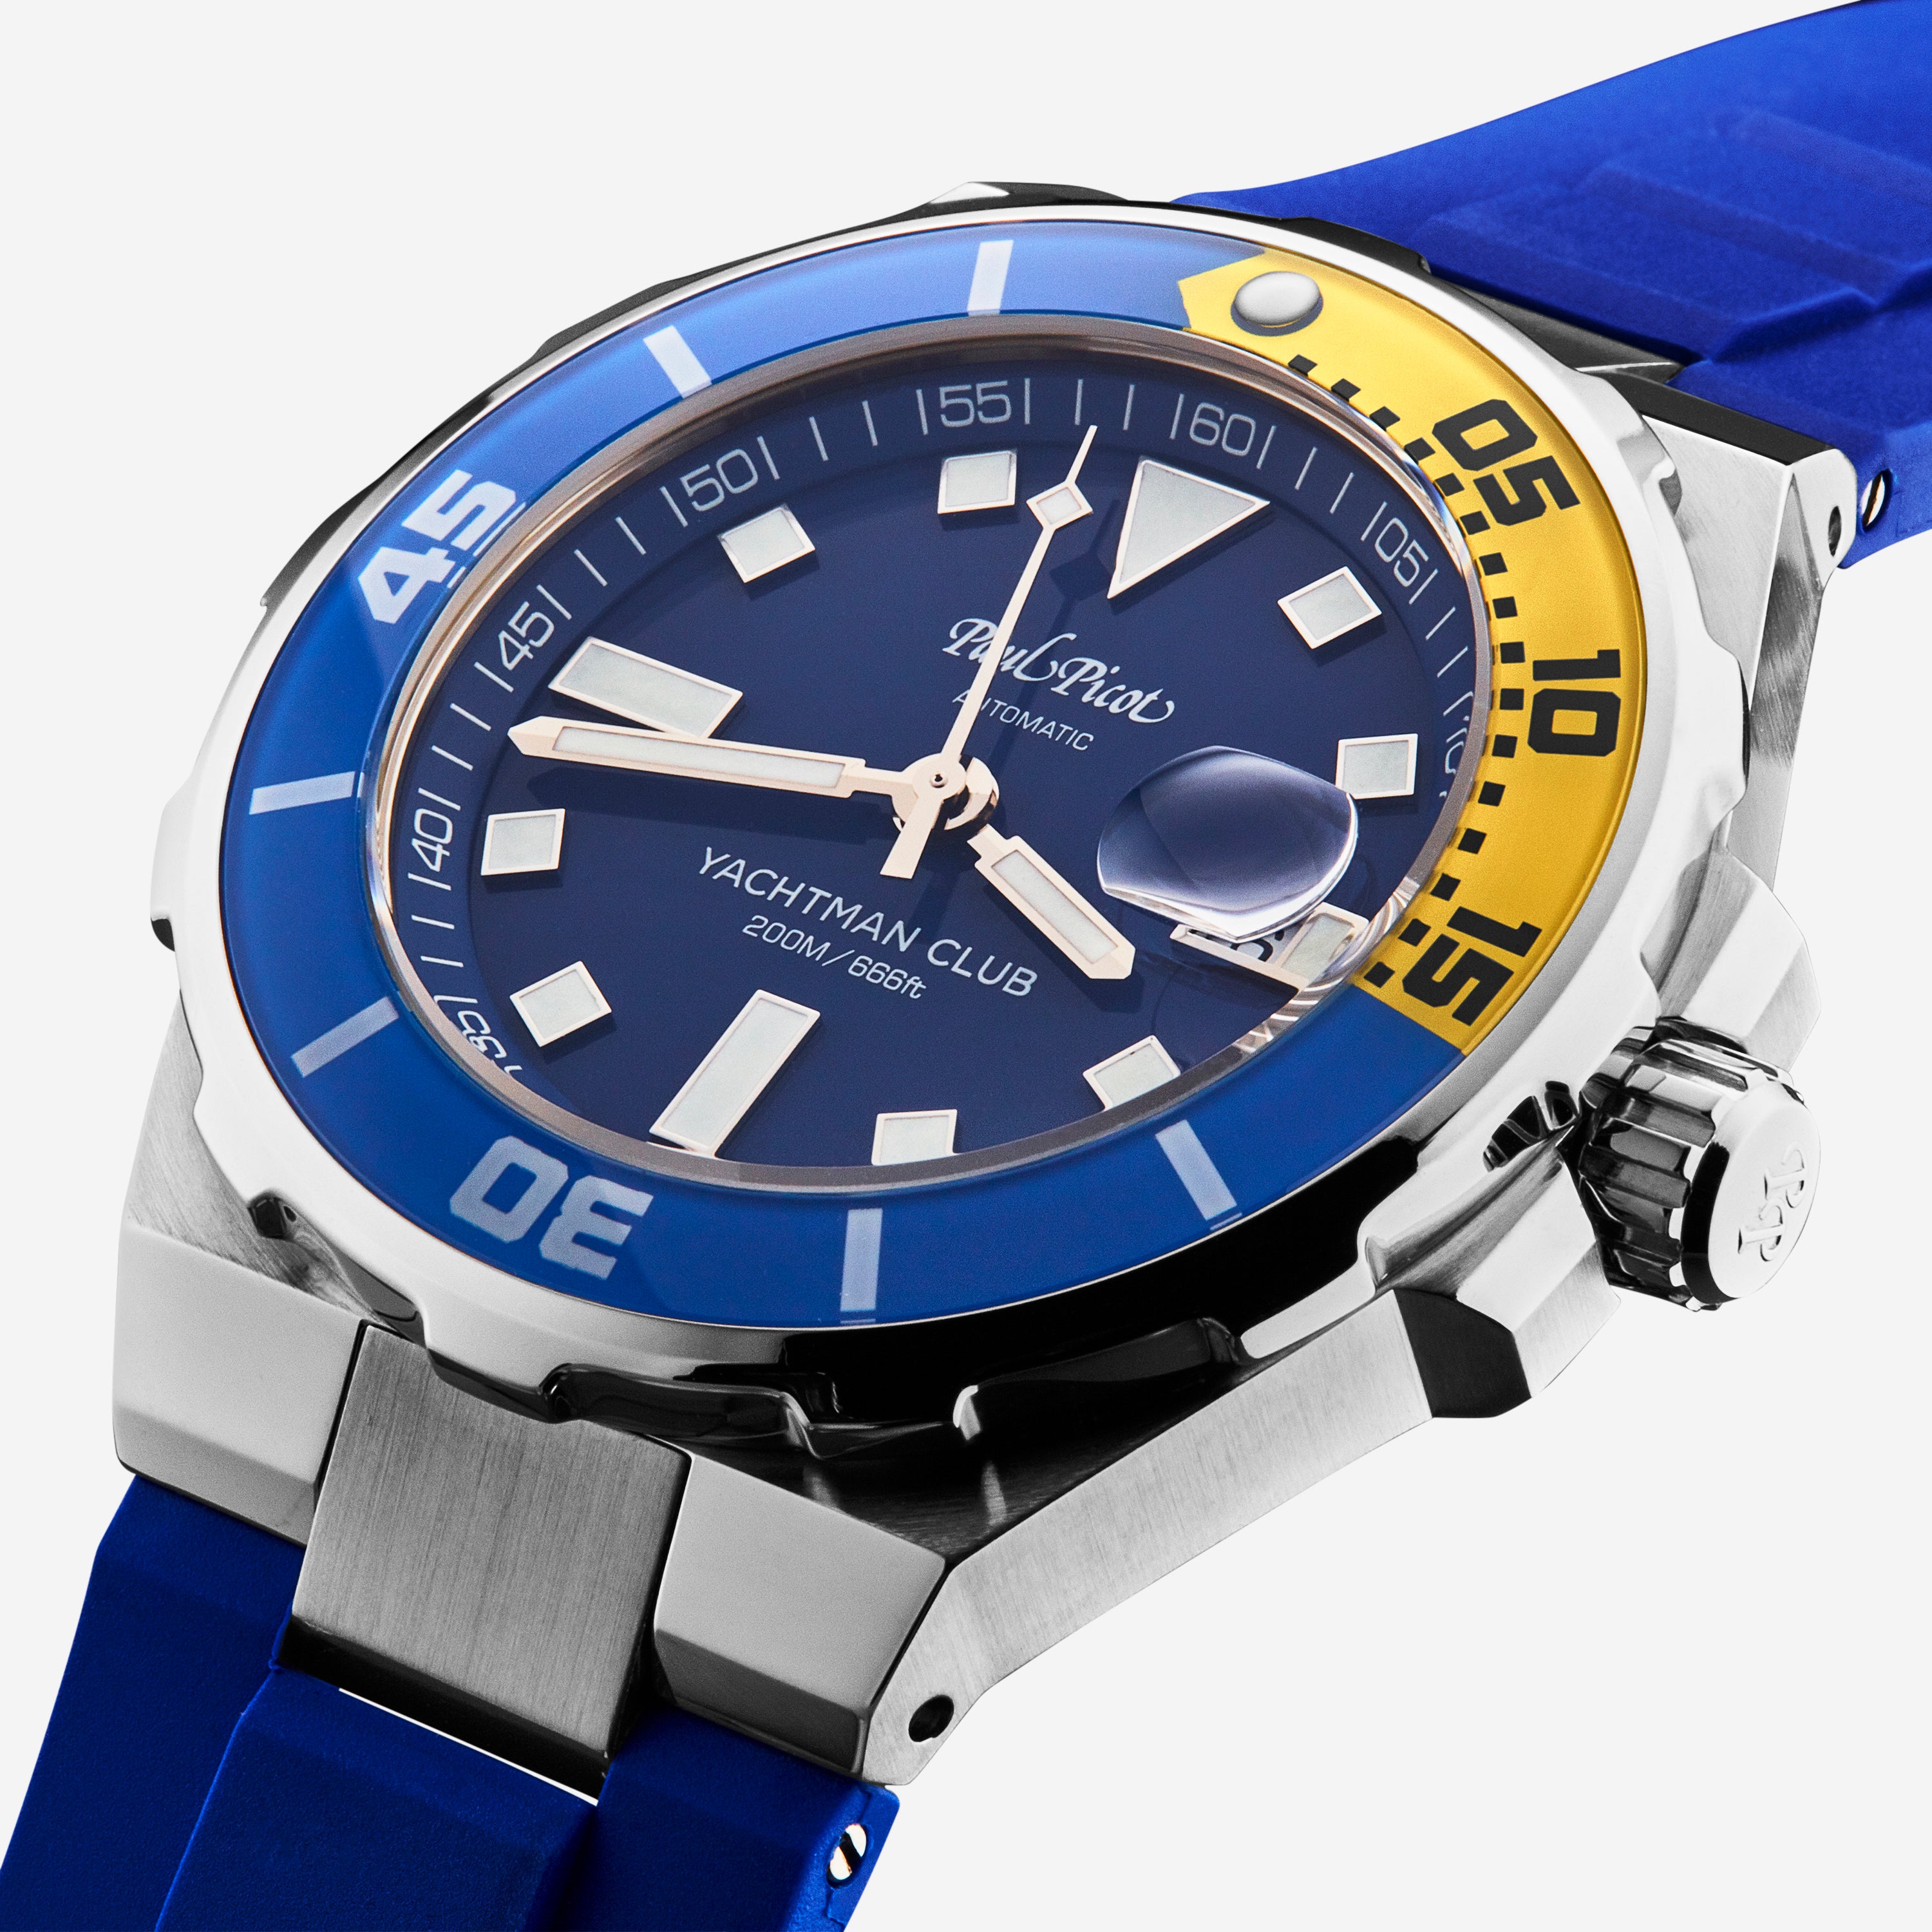 Paul Picot Yachtman Club Blue Dial Men's Automatic Watch P1251BJ.SG.2614CM010